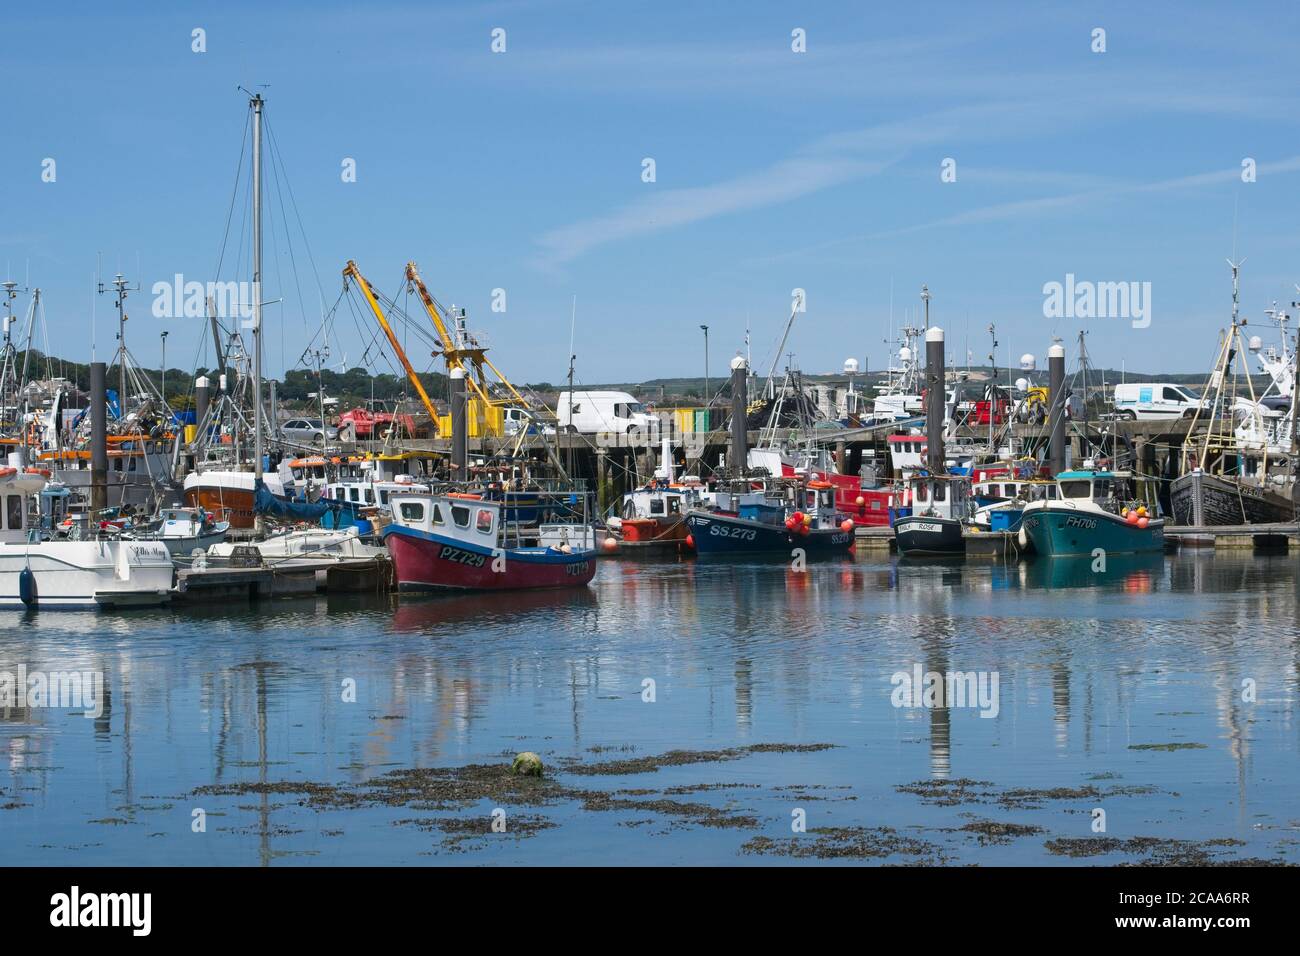 Trawler vertäuten im Hafen von Newlyn. Voll mit kleinen Fischerbooten und Seeschleppern an Liegeplätzen entlang Pontons. Blauer Himmel Querformat. Stockfoto